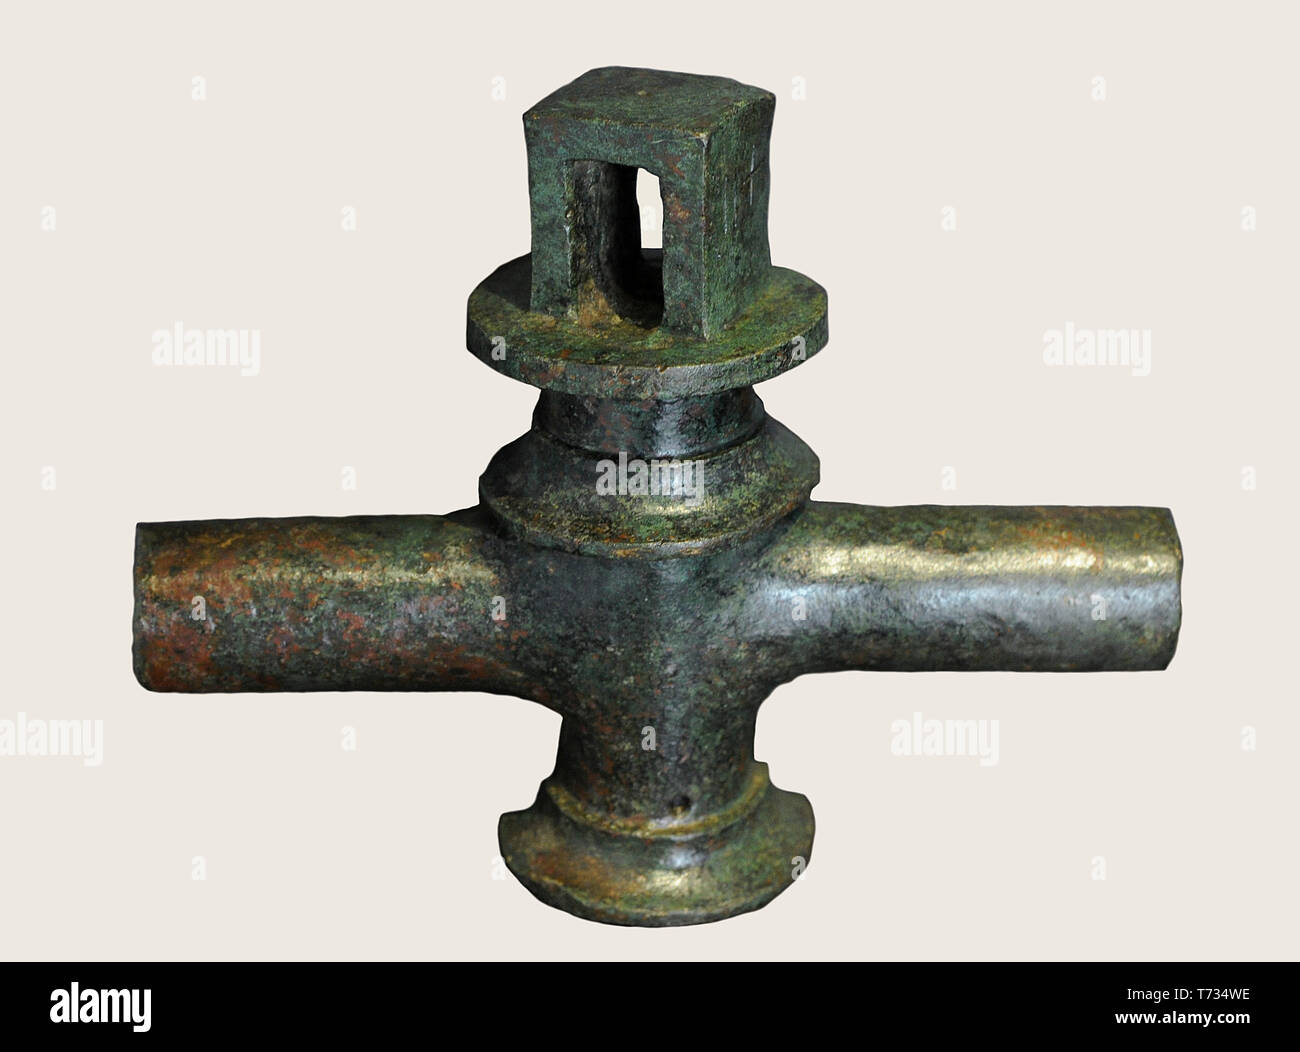 Leitungswasser. 1., 2. nachchristlichen Jahrhunderten. Bronze. Nationalen Archäologischen Museum. Madrid. Spanien. Stockfoto